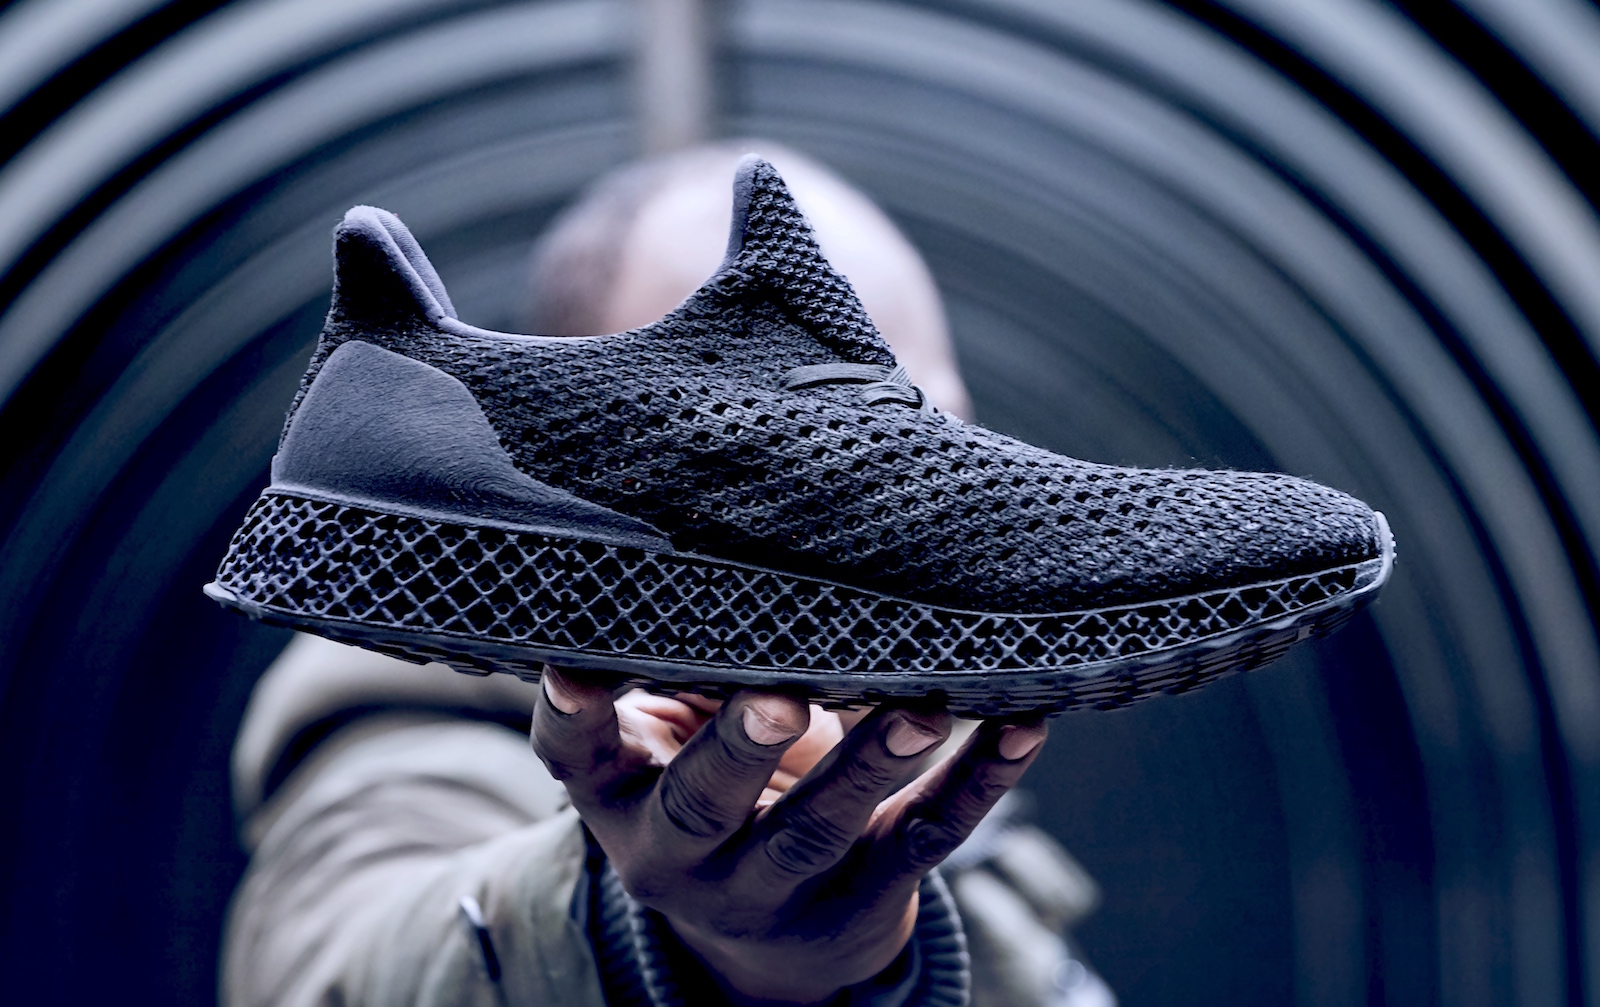 Adidas продает кроссовки напечатанные на 3D-принтере за 333$